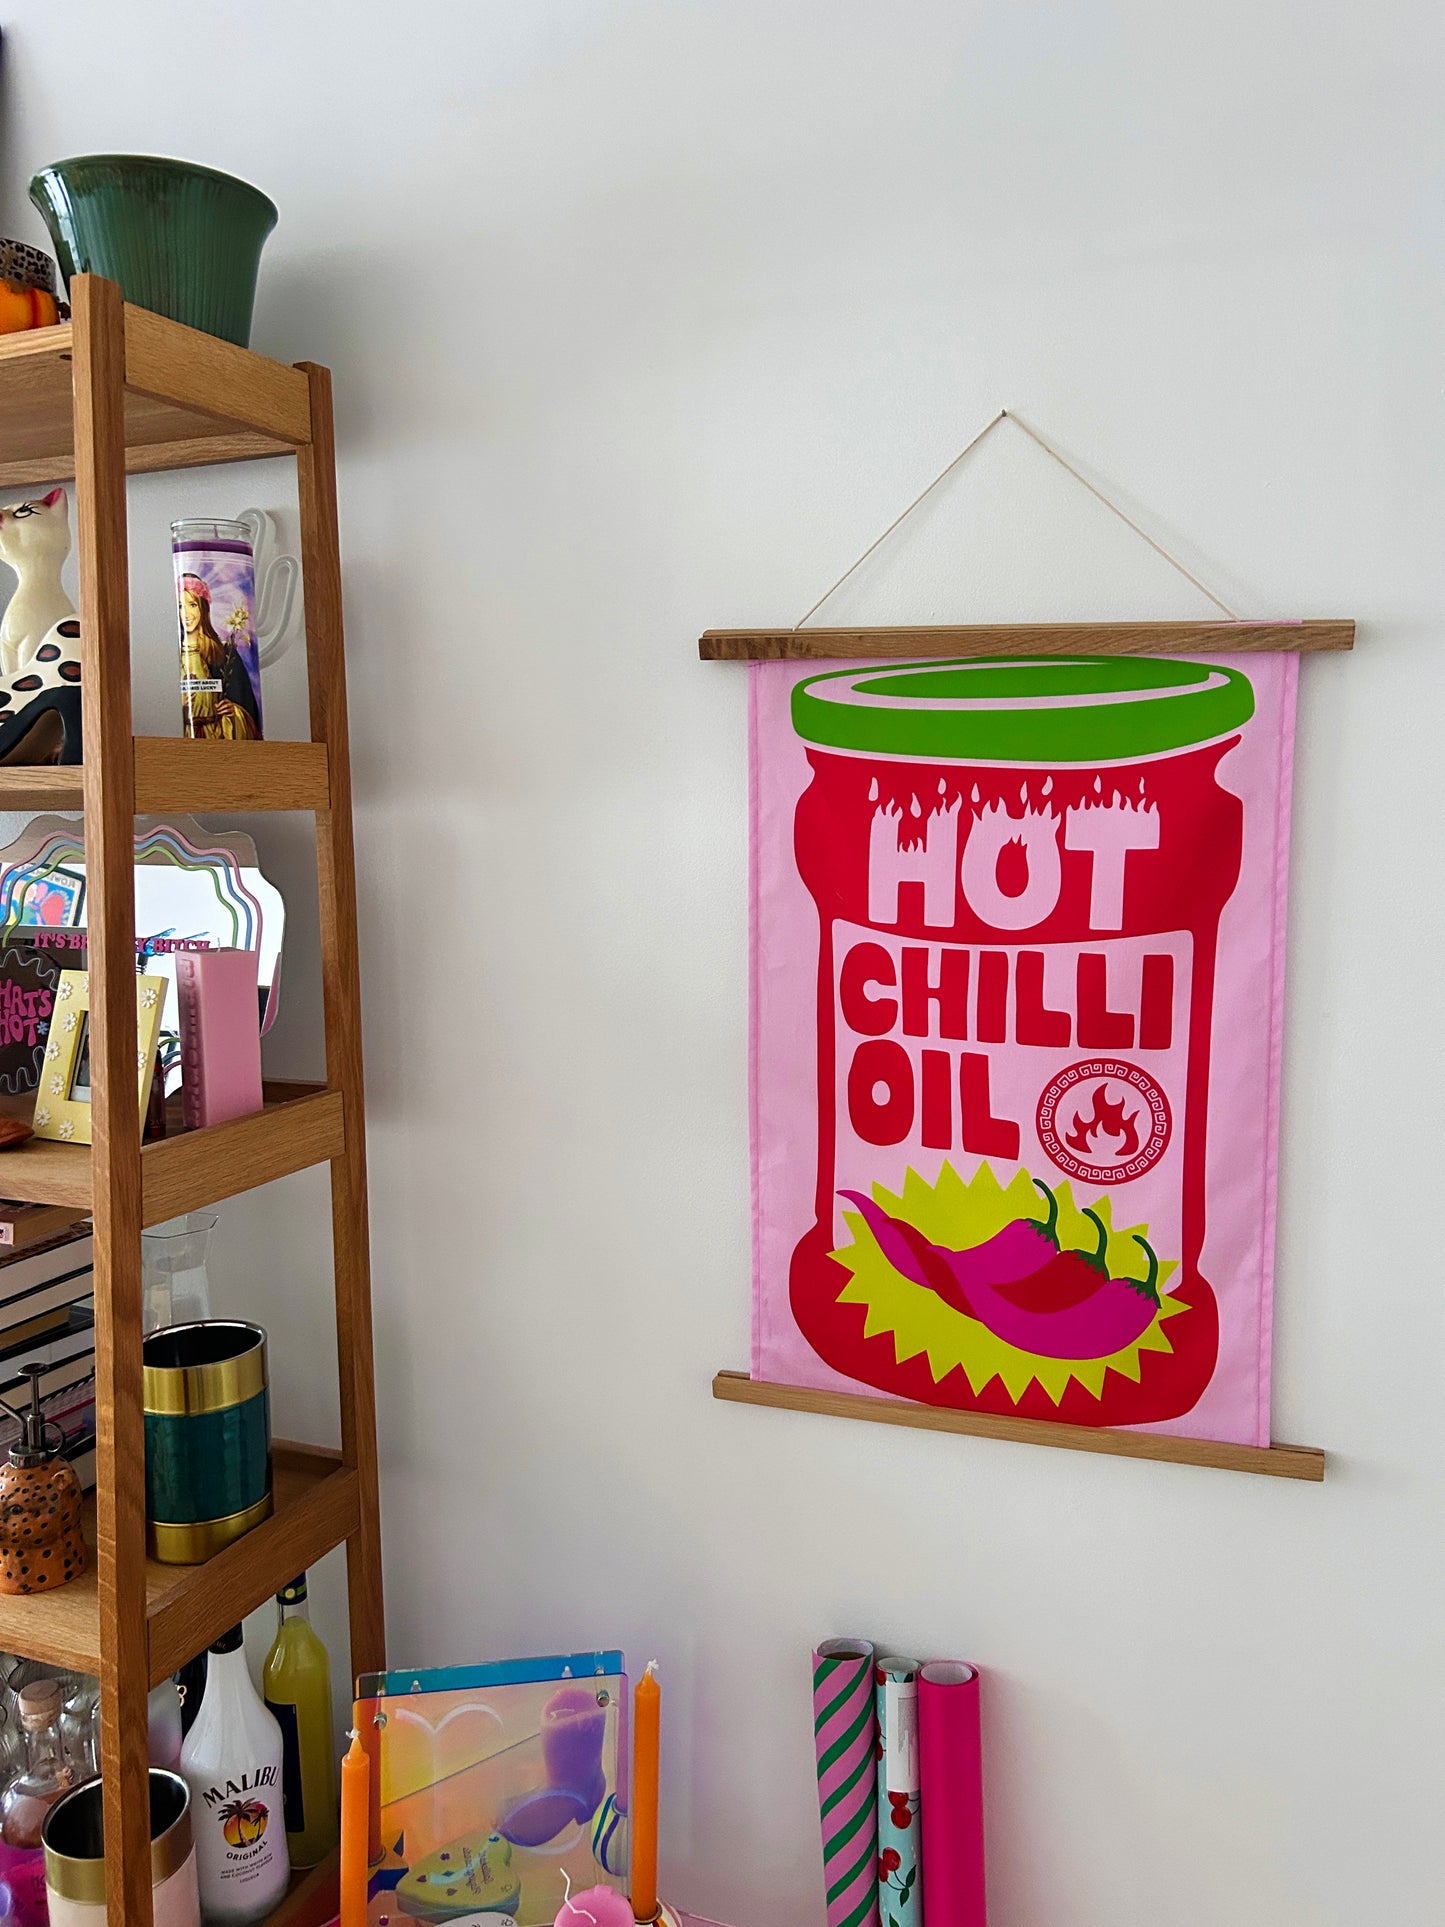 Hot Chilli Oil Tea towel